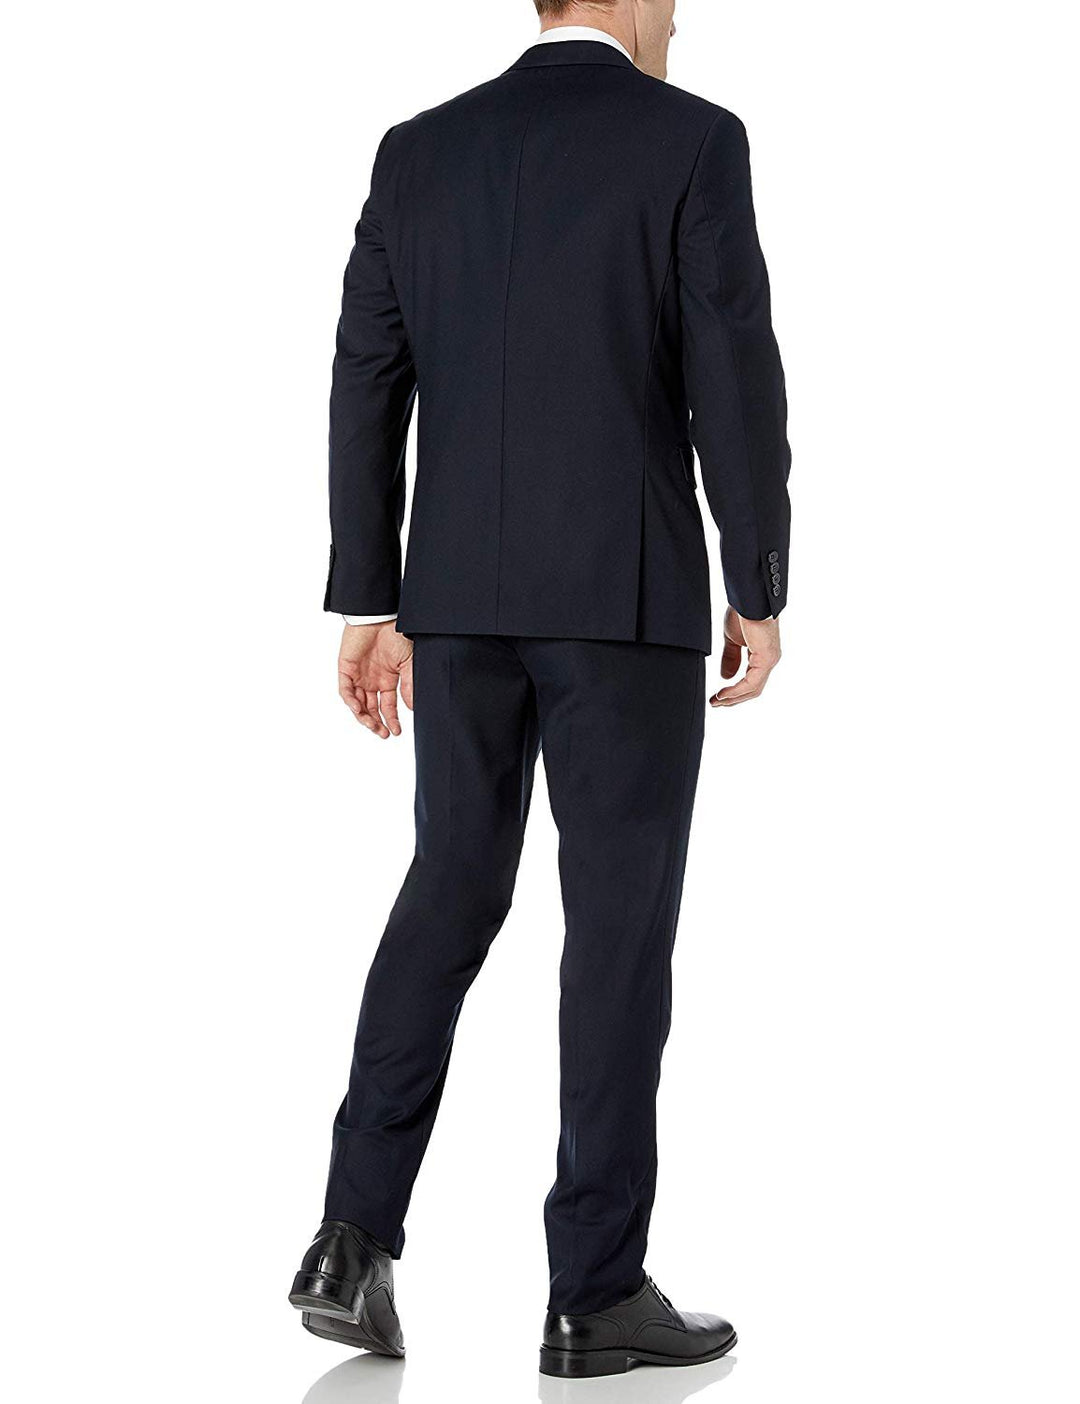 Adam Baker Men's Slim Fit 3-Piece (Jacket, Vets, Trousers) Vested Suit Set Black & Navy